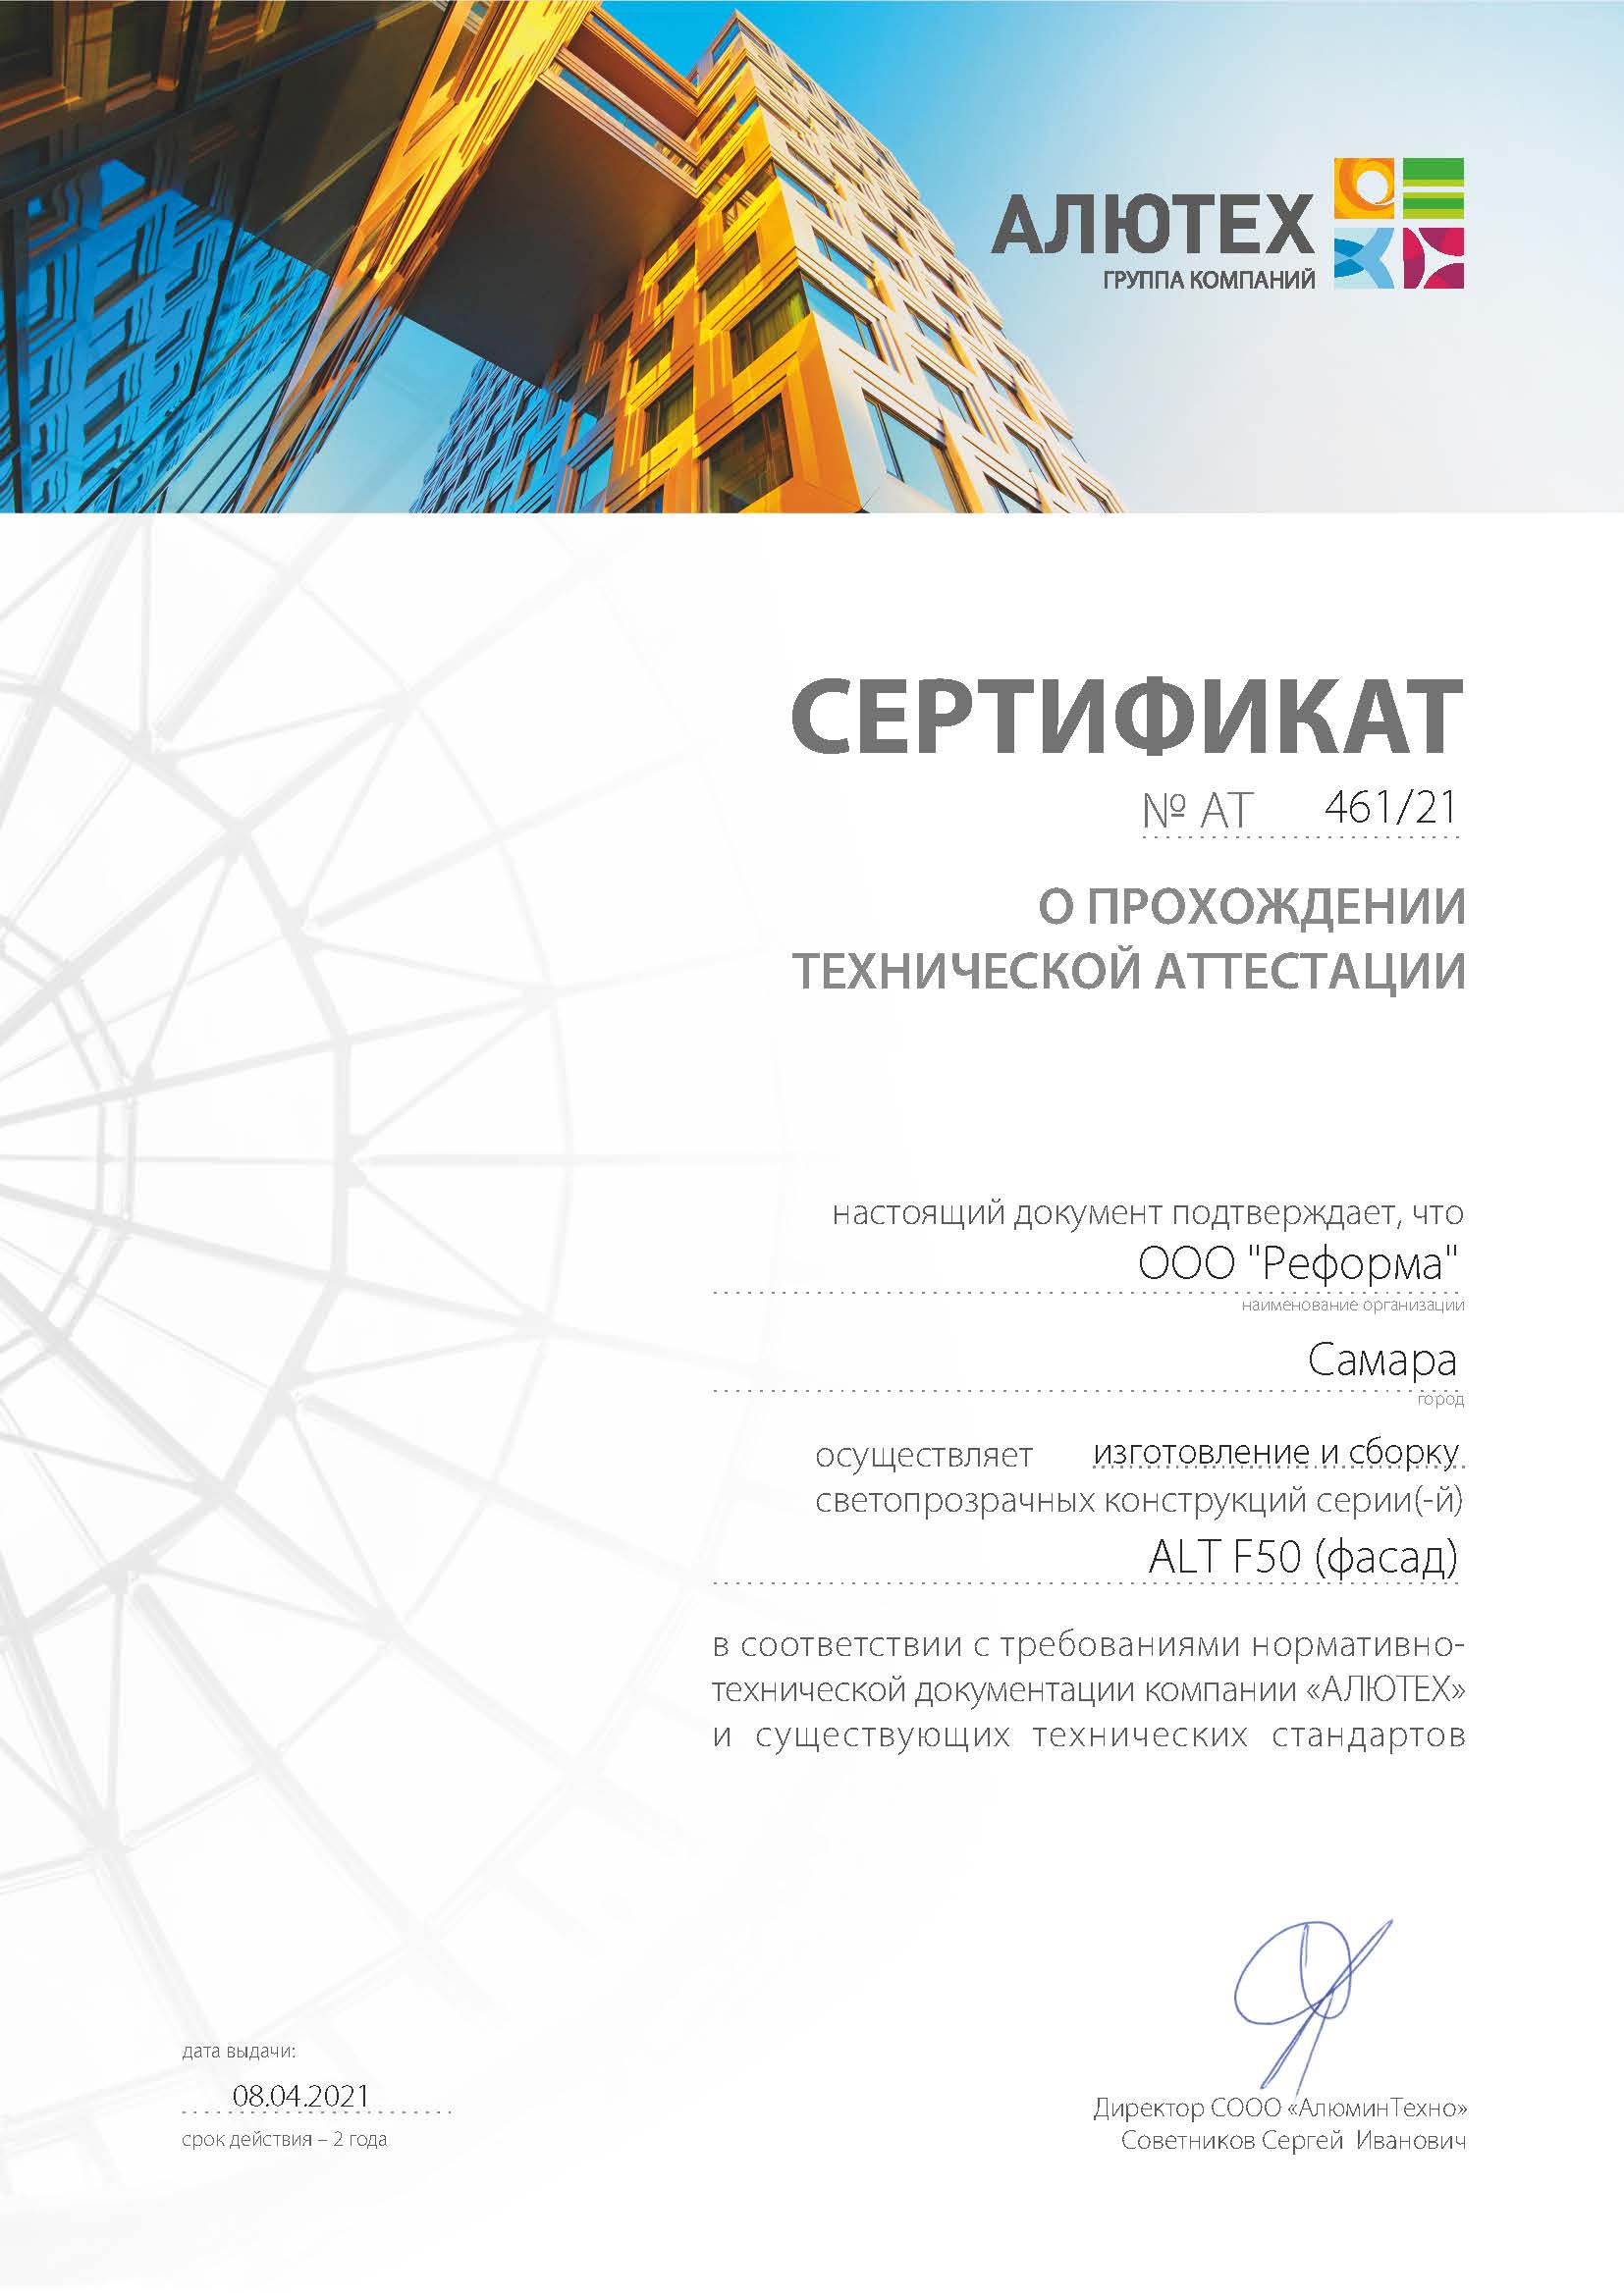 Технический сертификат Алютех